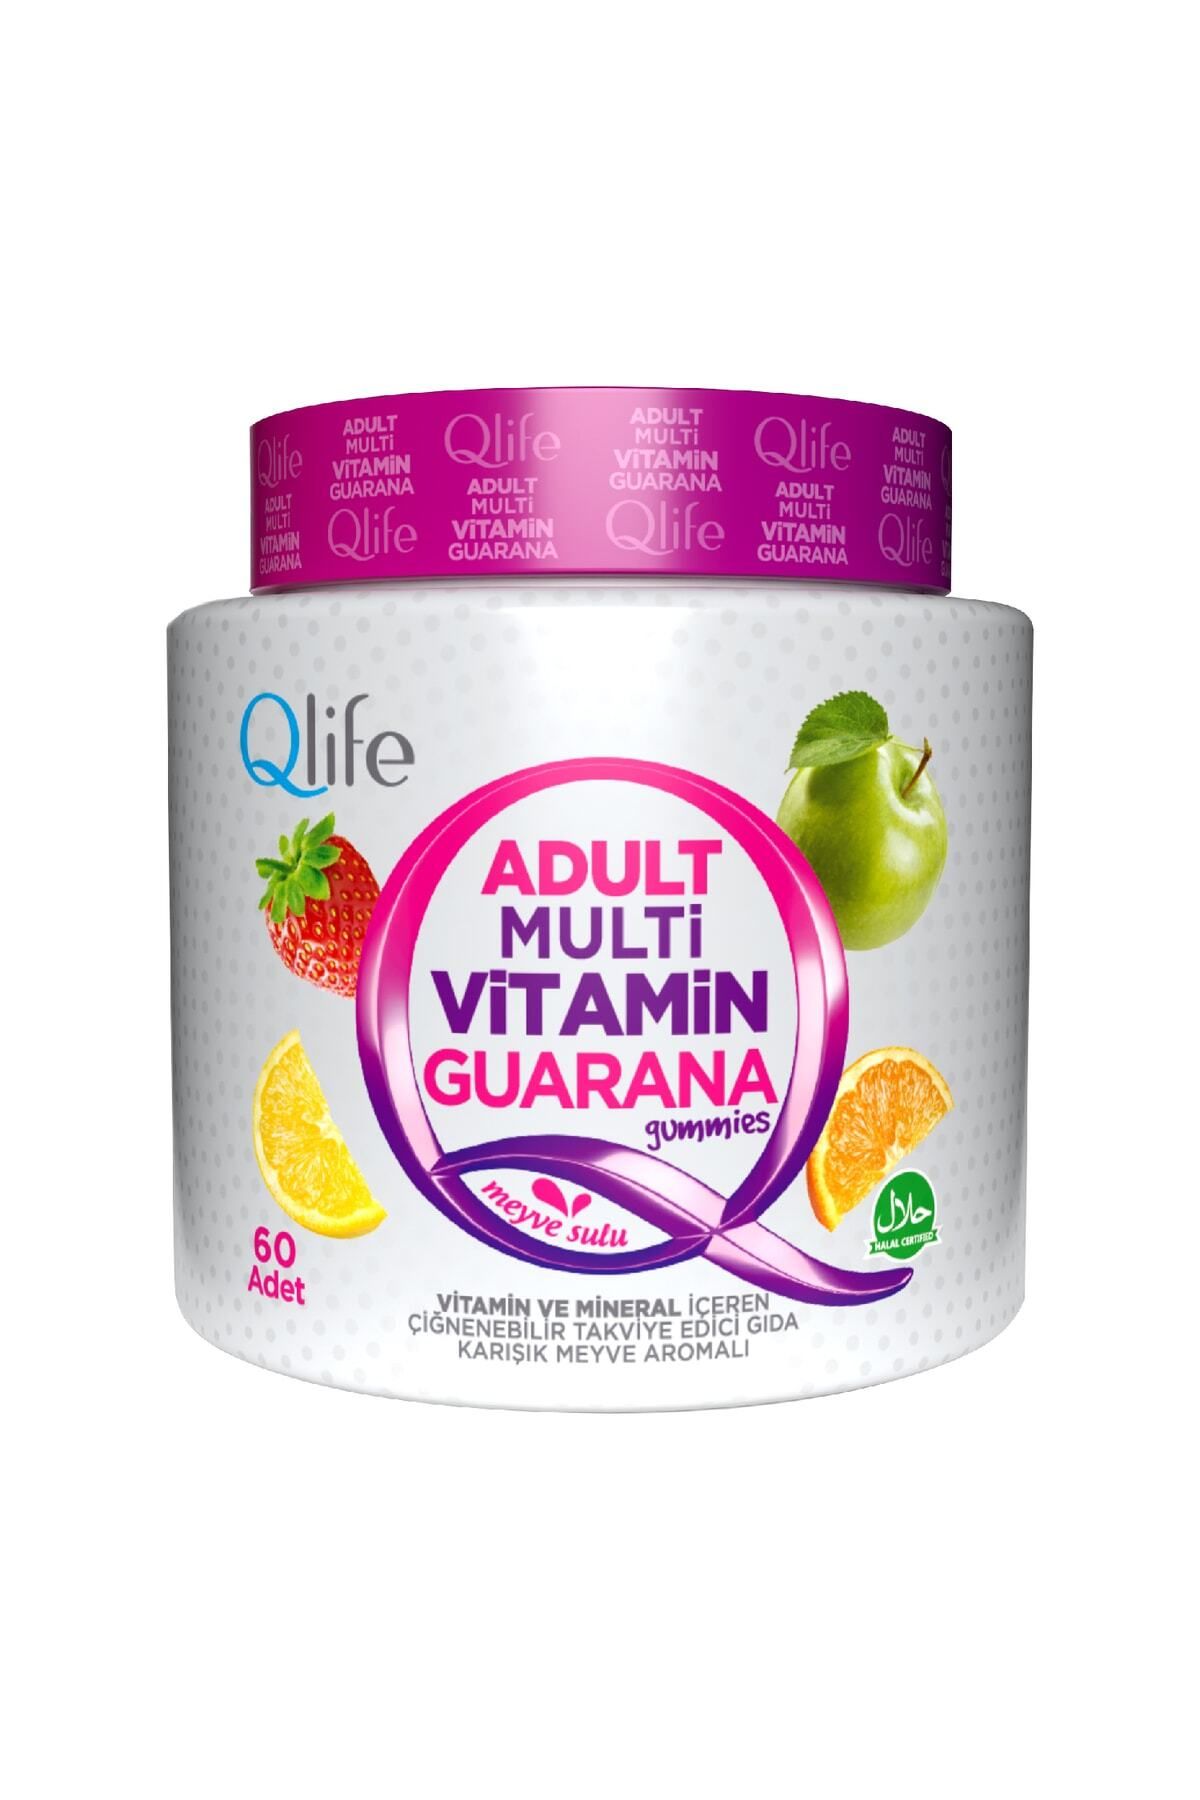 Q LİFE Adult Multivitamin Guarana Gummies 60 Çiğnenebilir Tablet